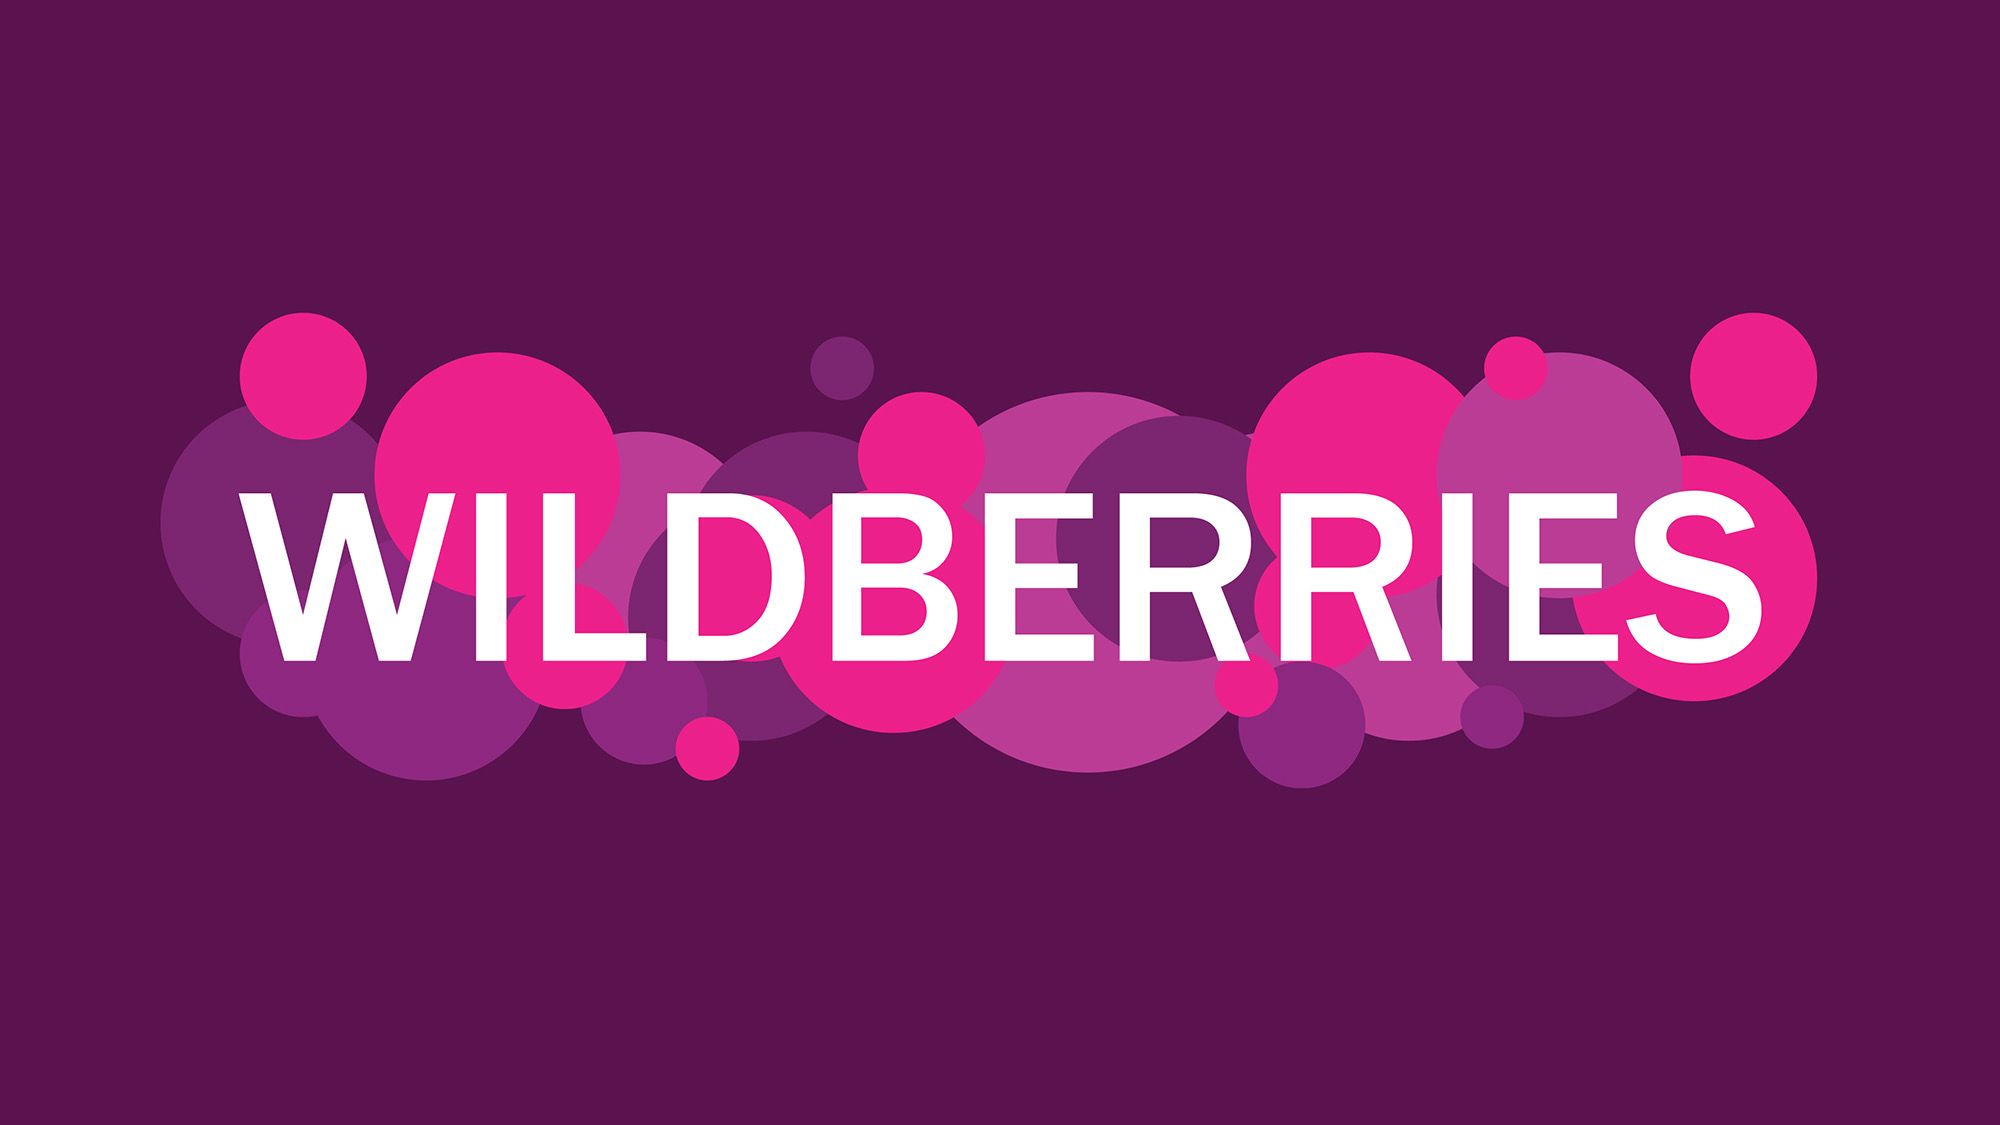 Wilberies